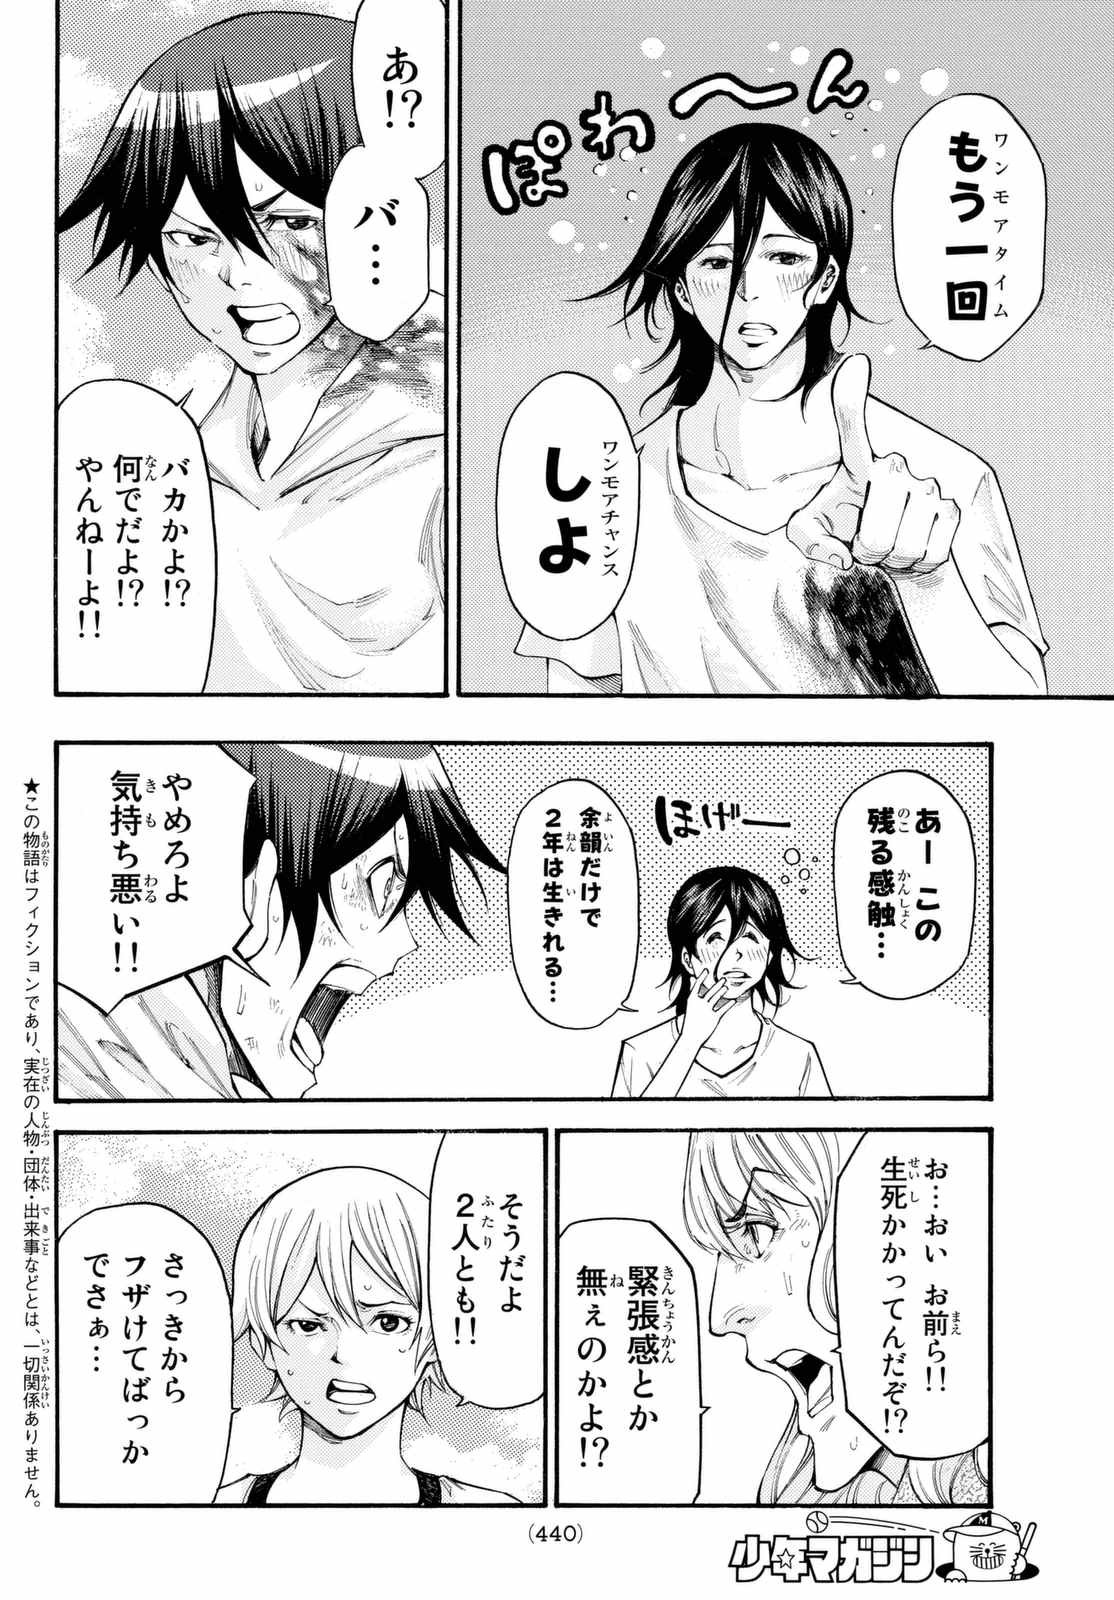 Kamisama no Ituori - Chapter 164 - Page 2